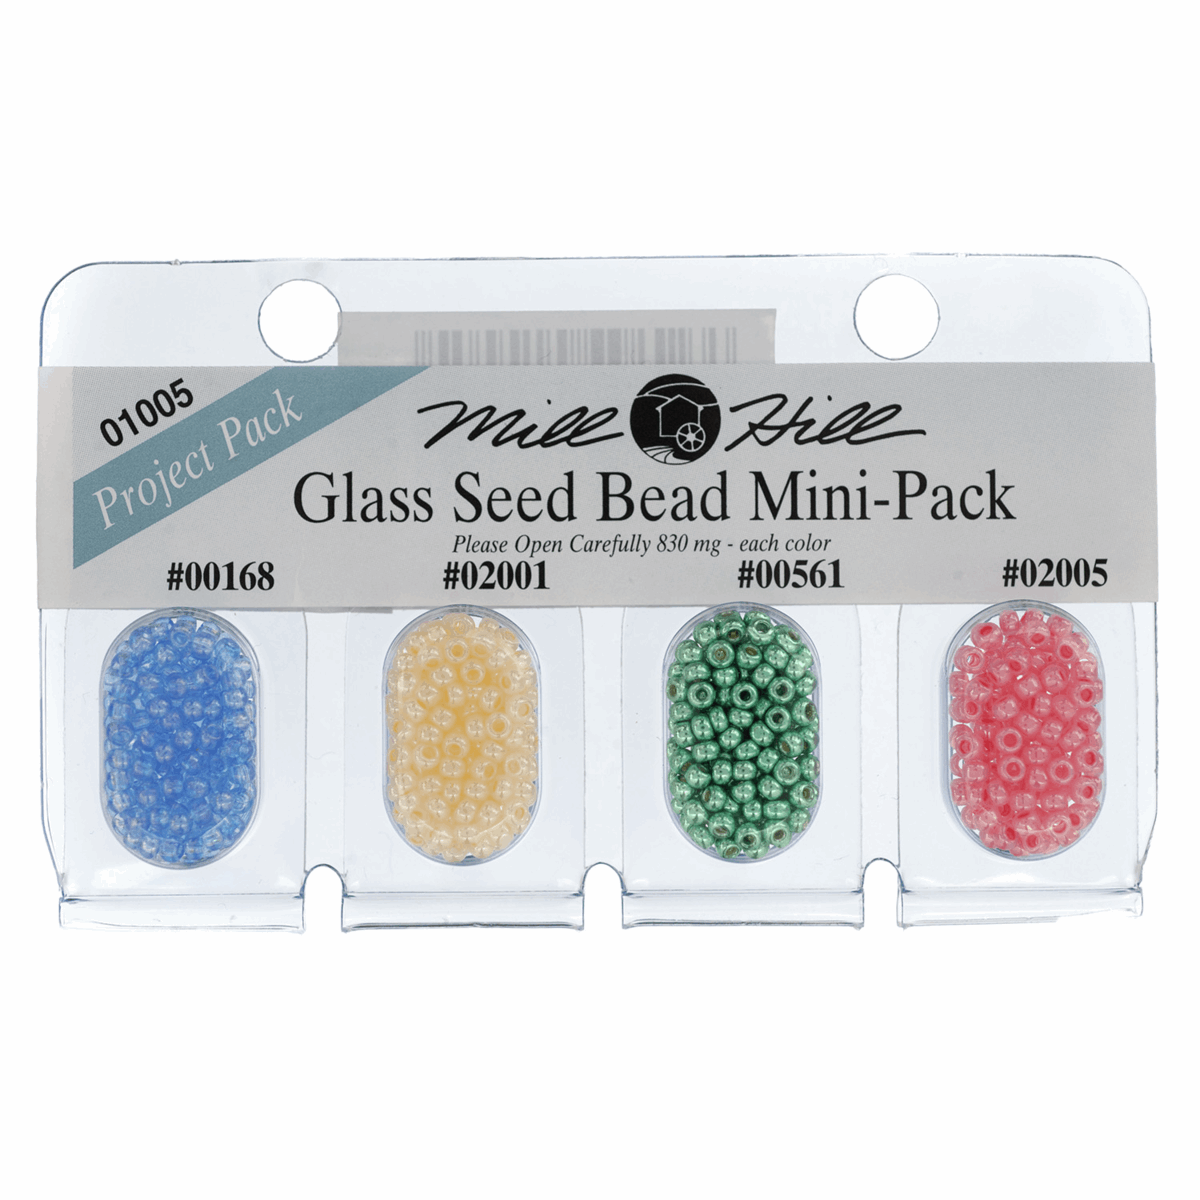 Glass Seed Bead Mini Pack